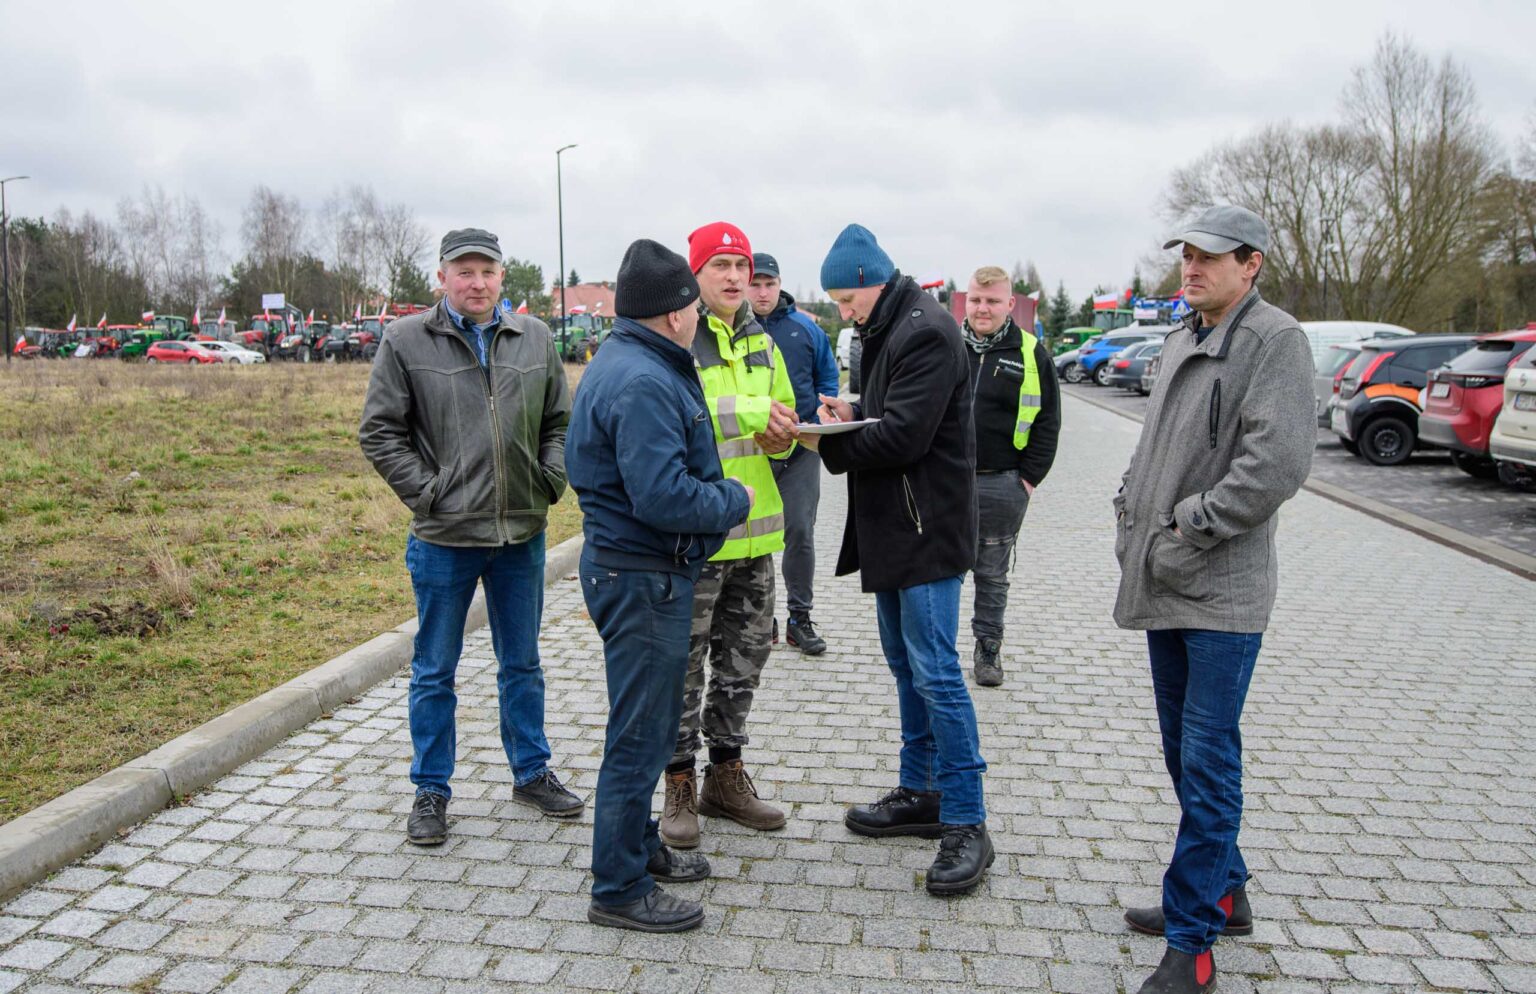 Protest rolniczy w Poddebicach i spotkanie z Wojewoda